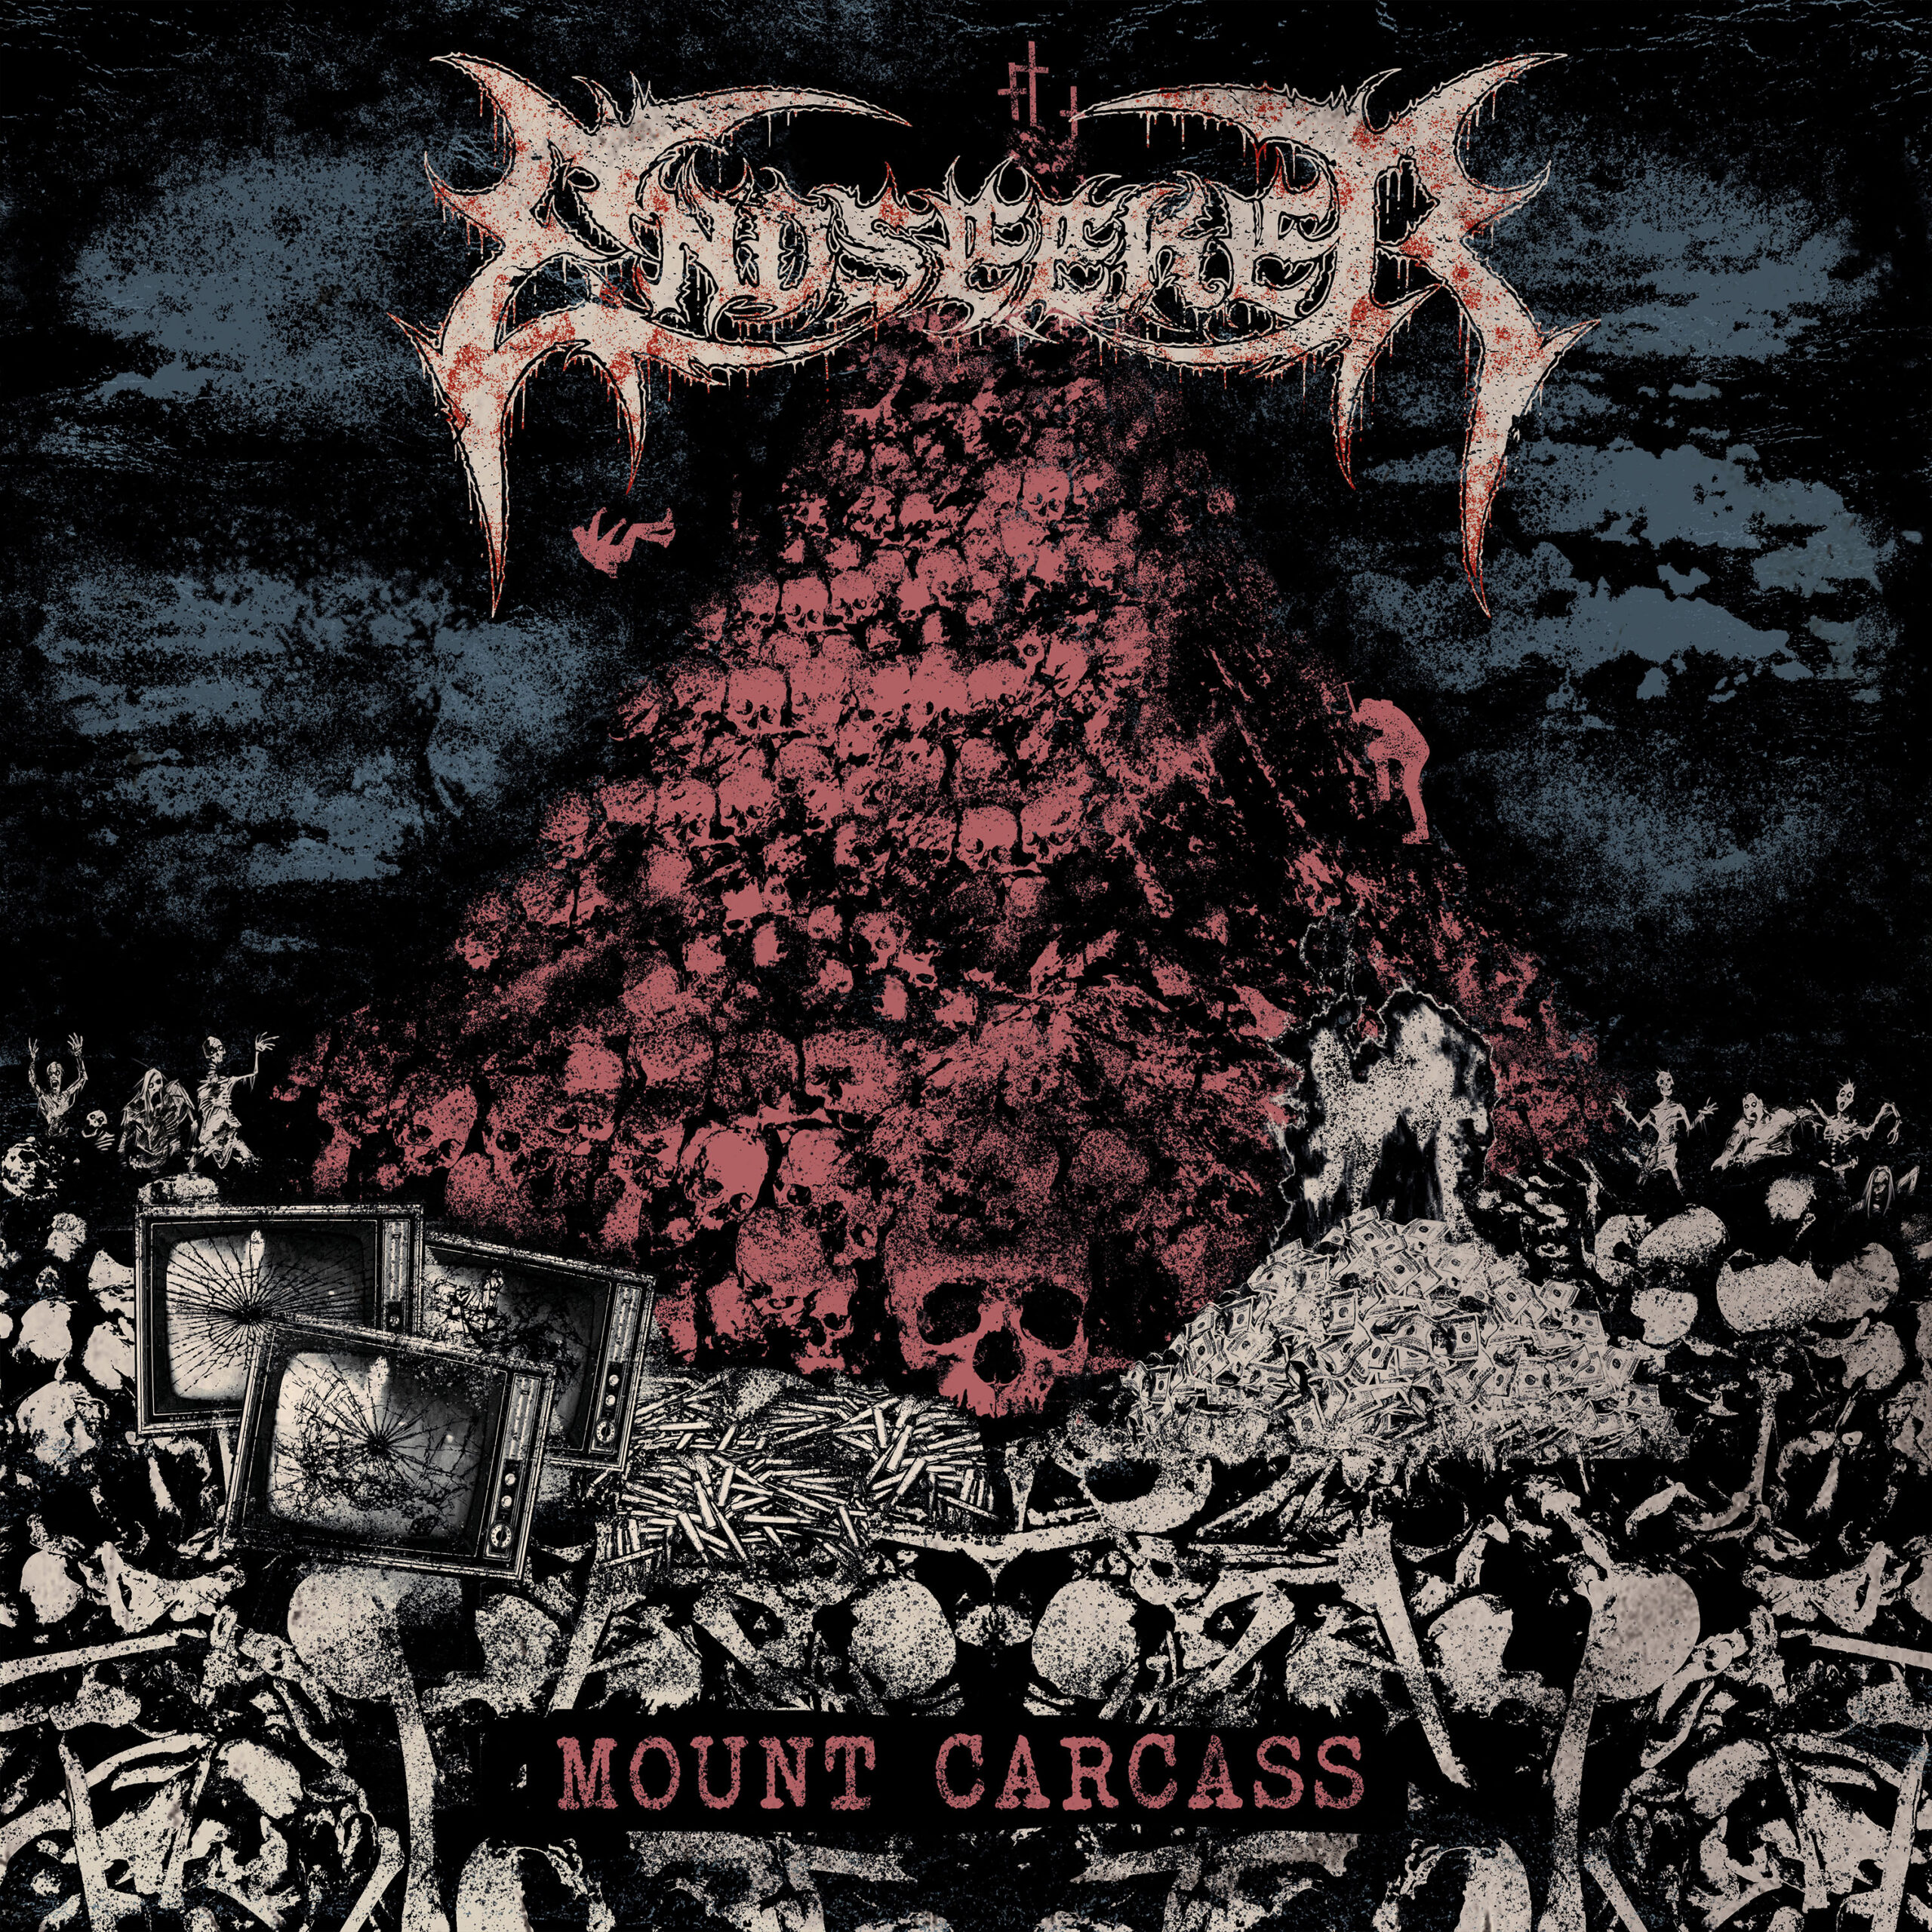 Endseeker – Mount Carcass